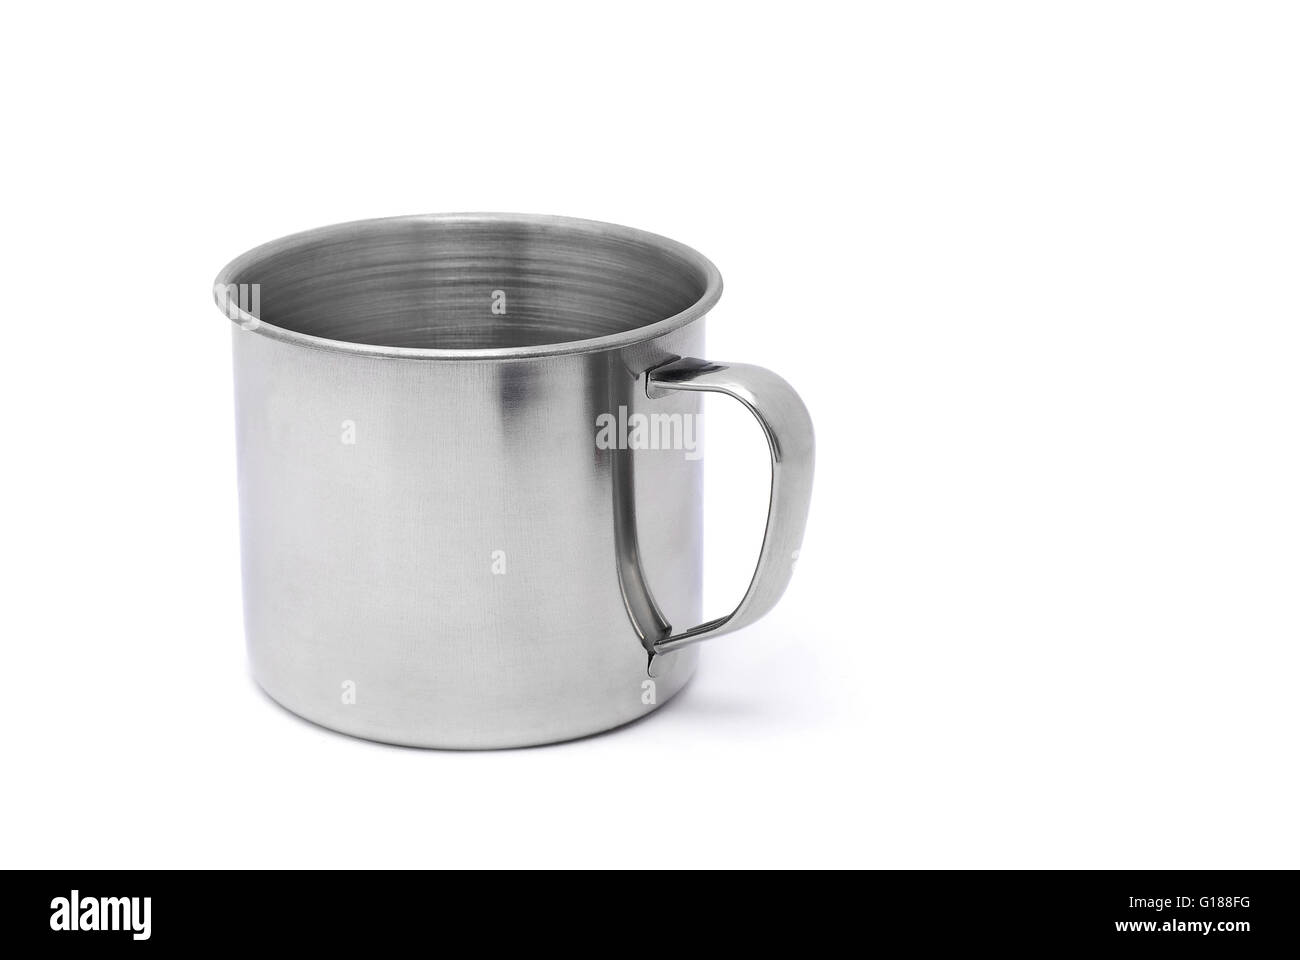 Tin camping mug immagini e fotografie stock ad alta risoluzione - Alamy